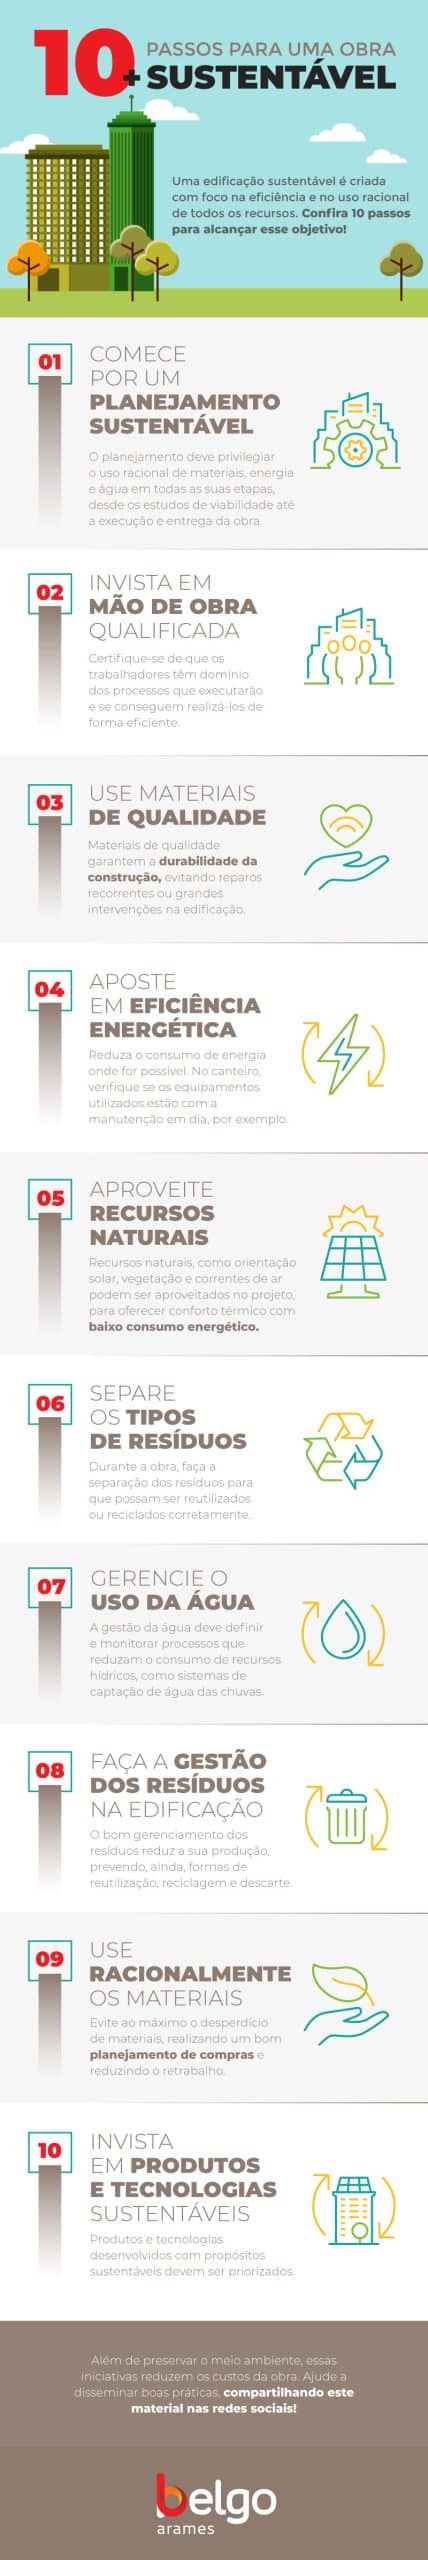 infográfico: 10 passos para uma obra mais sustentável